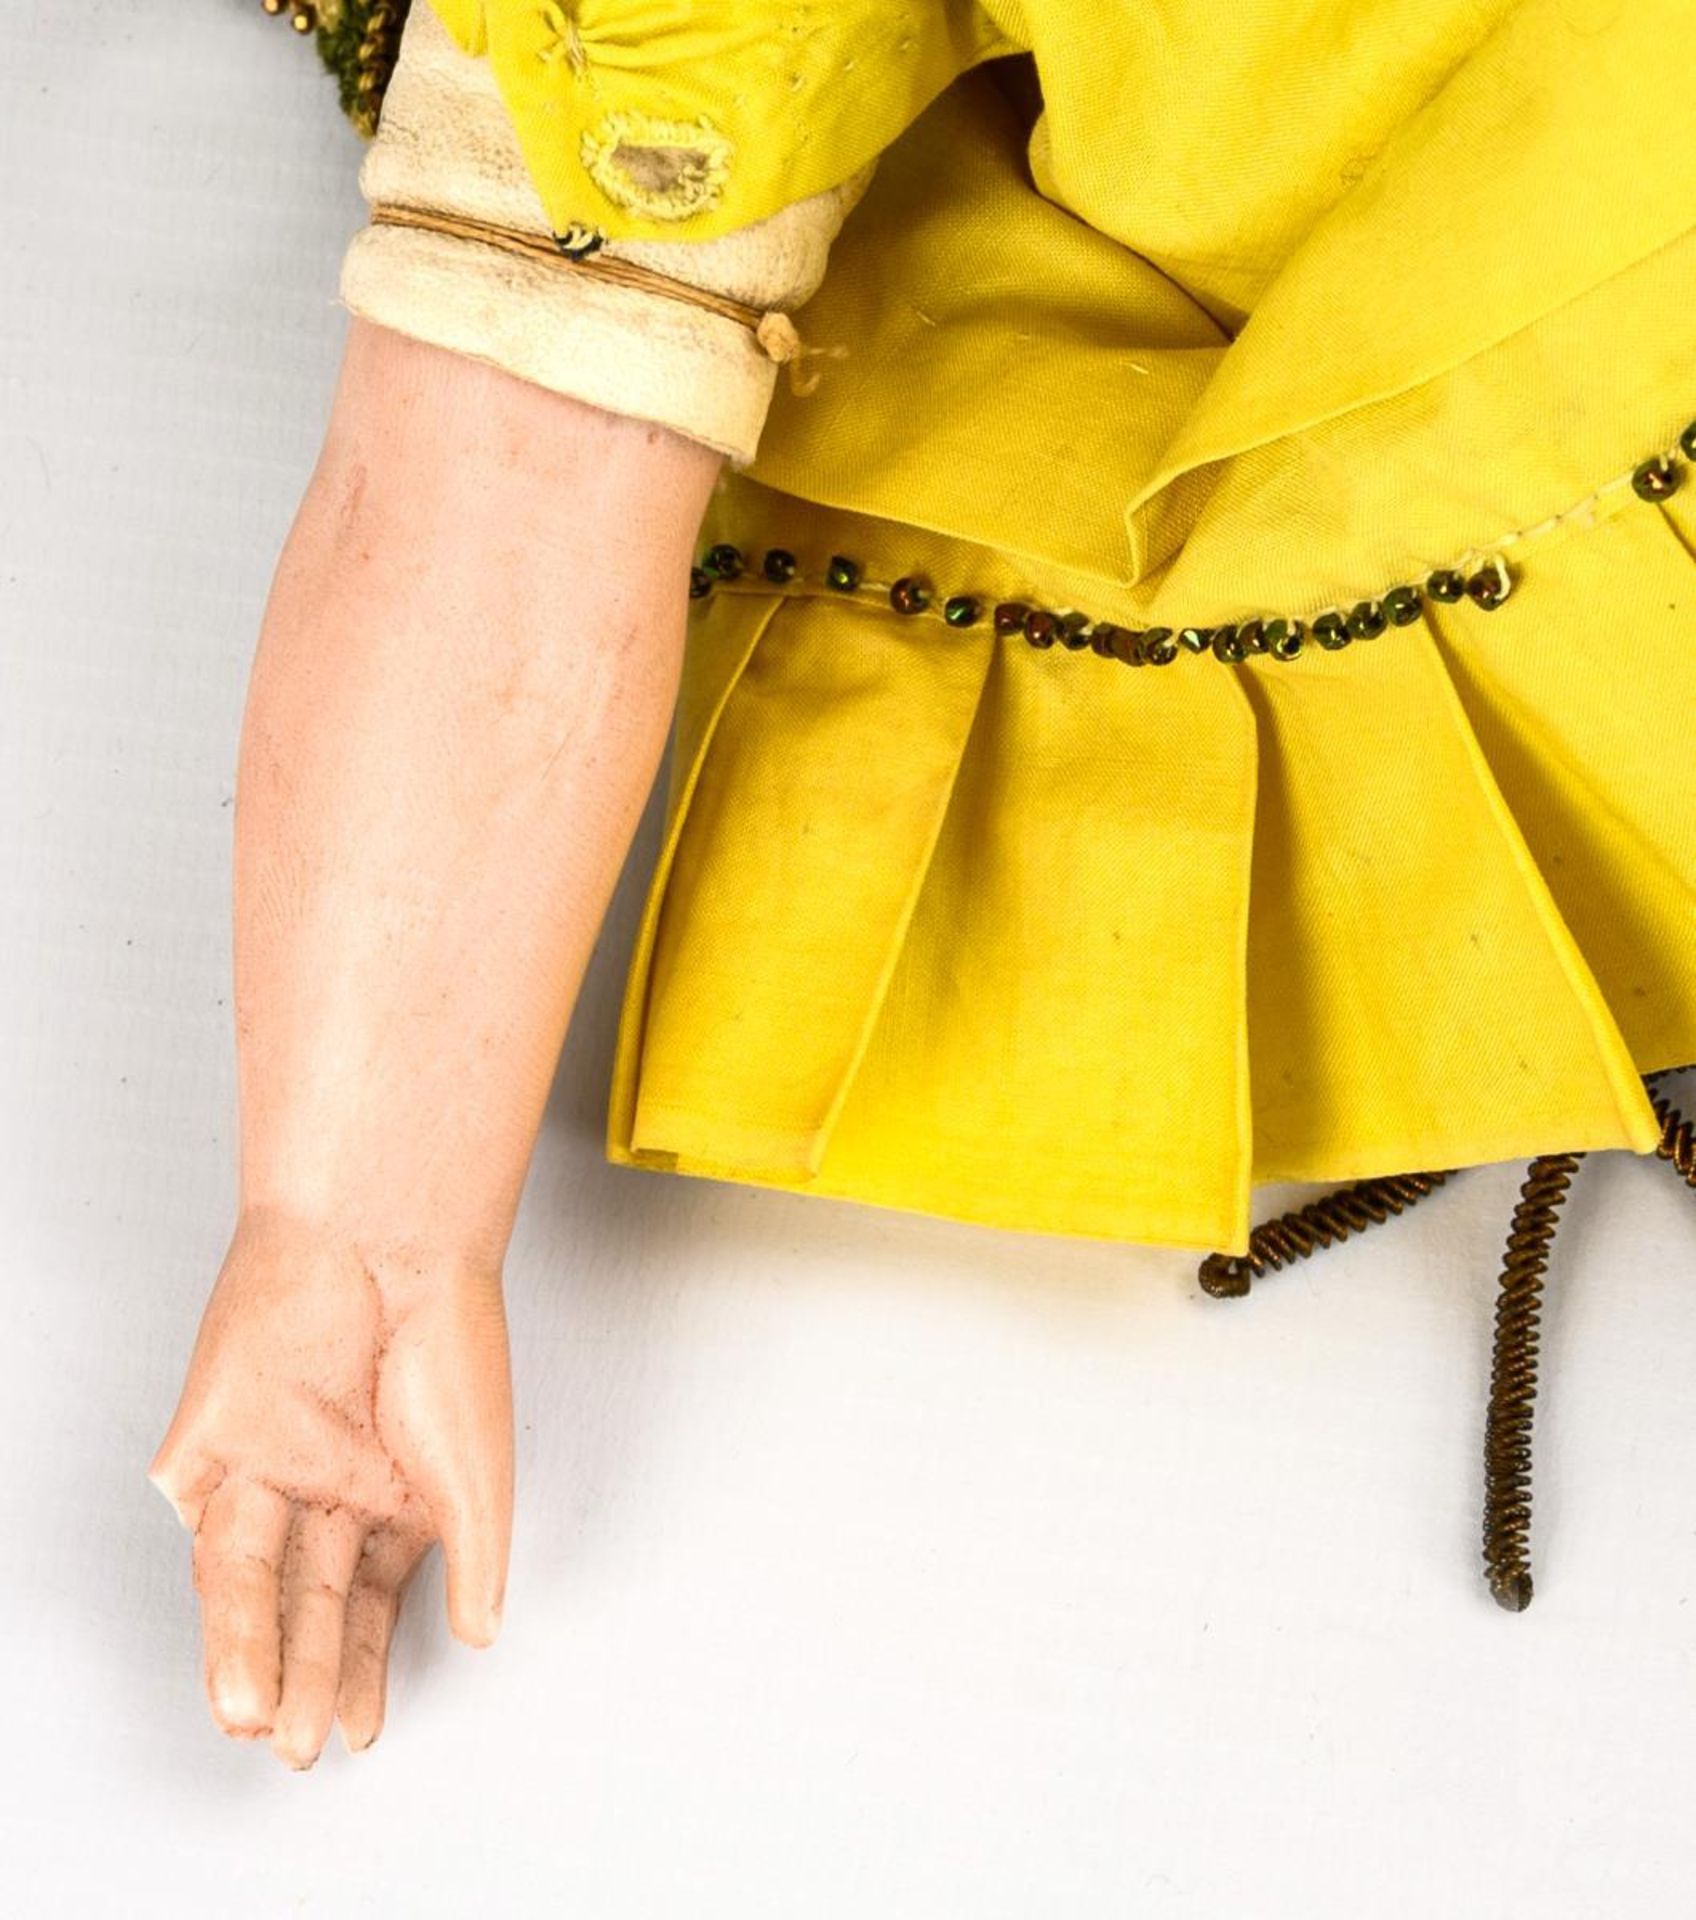 Puppendame in gelbem Kleid.  C. F. Kling. - Bild 5 aus 6